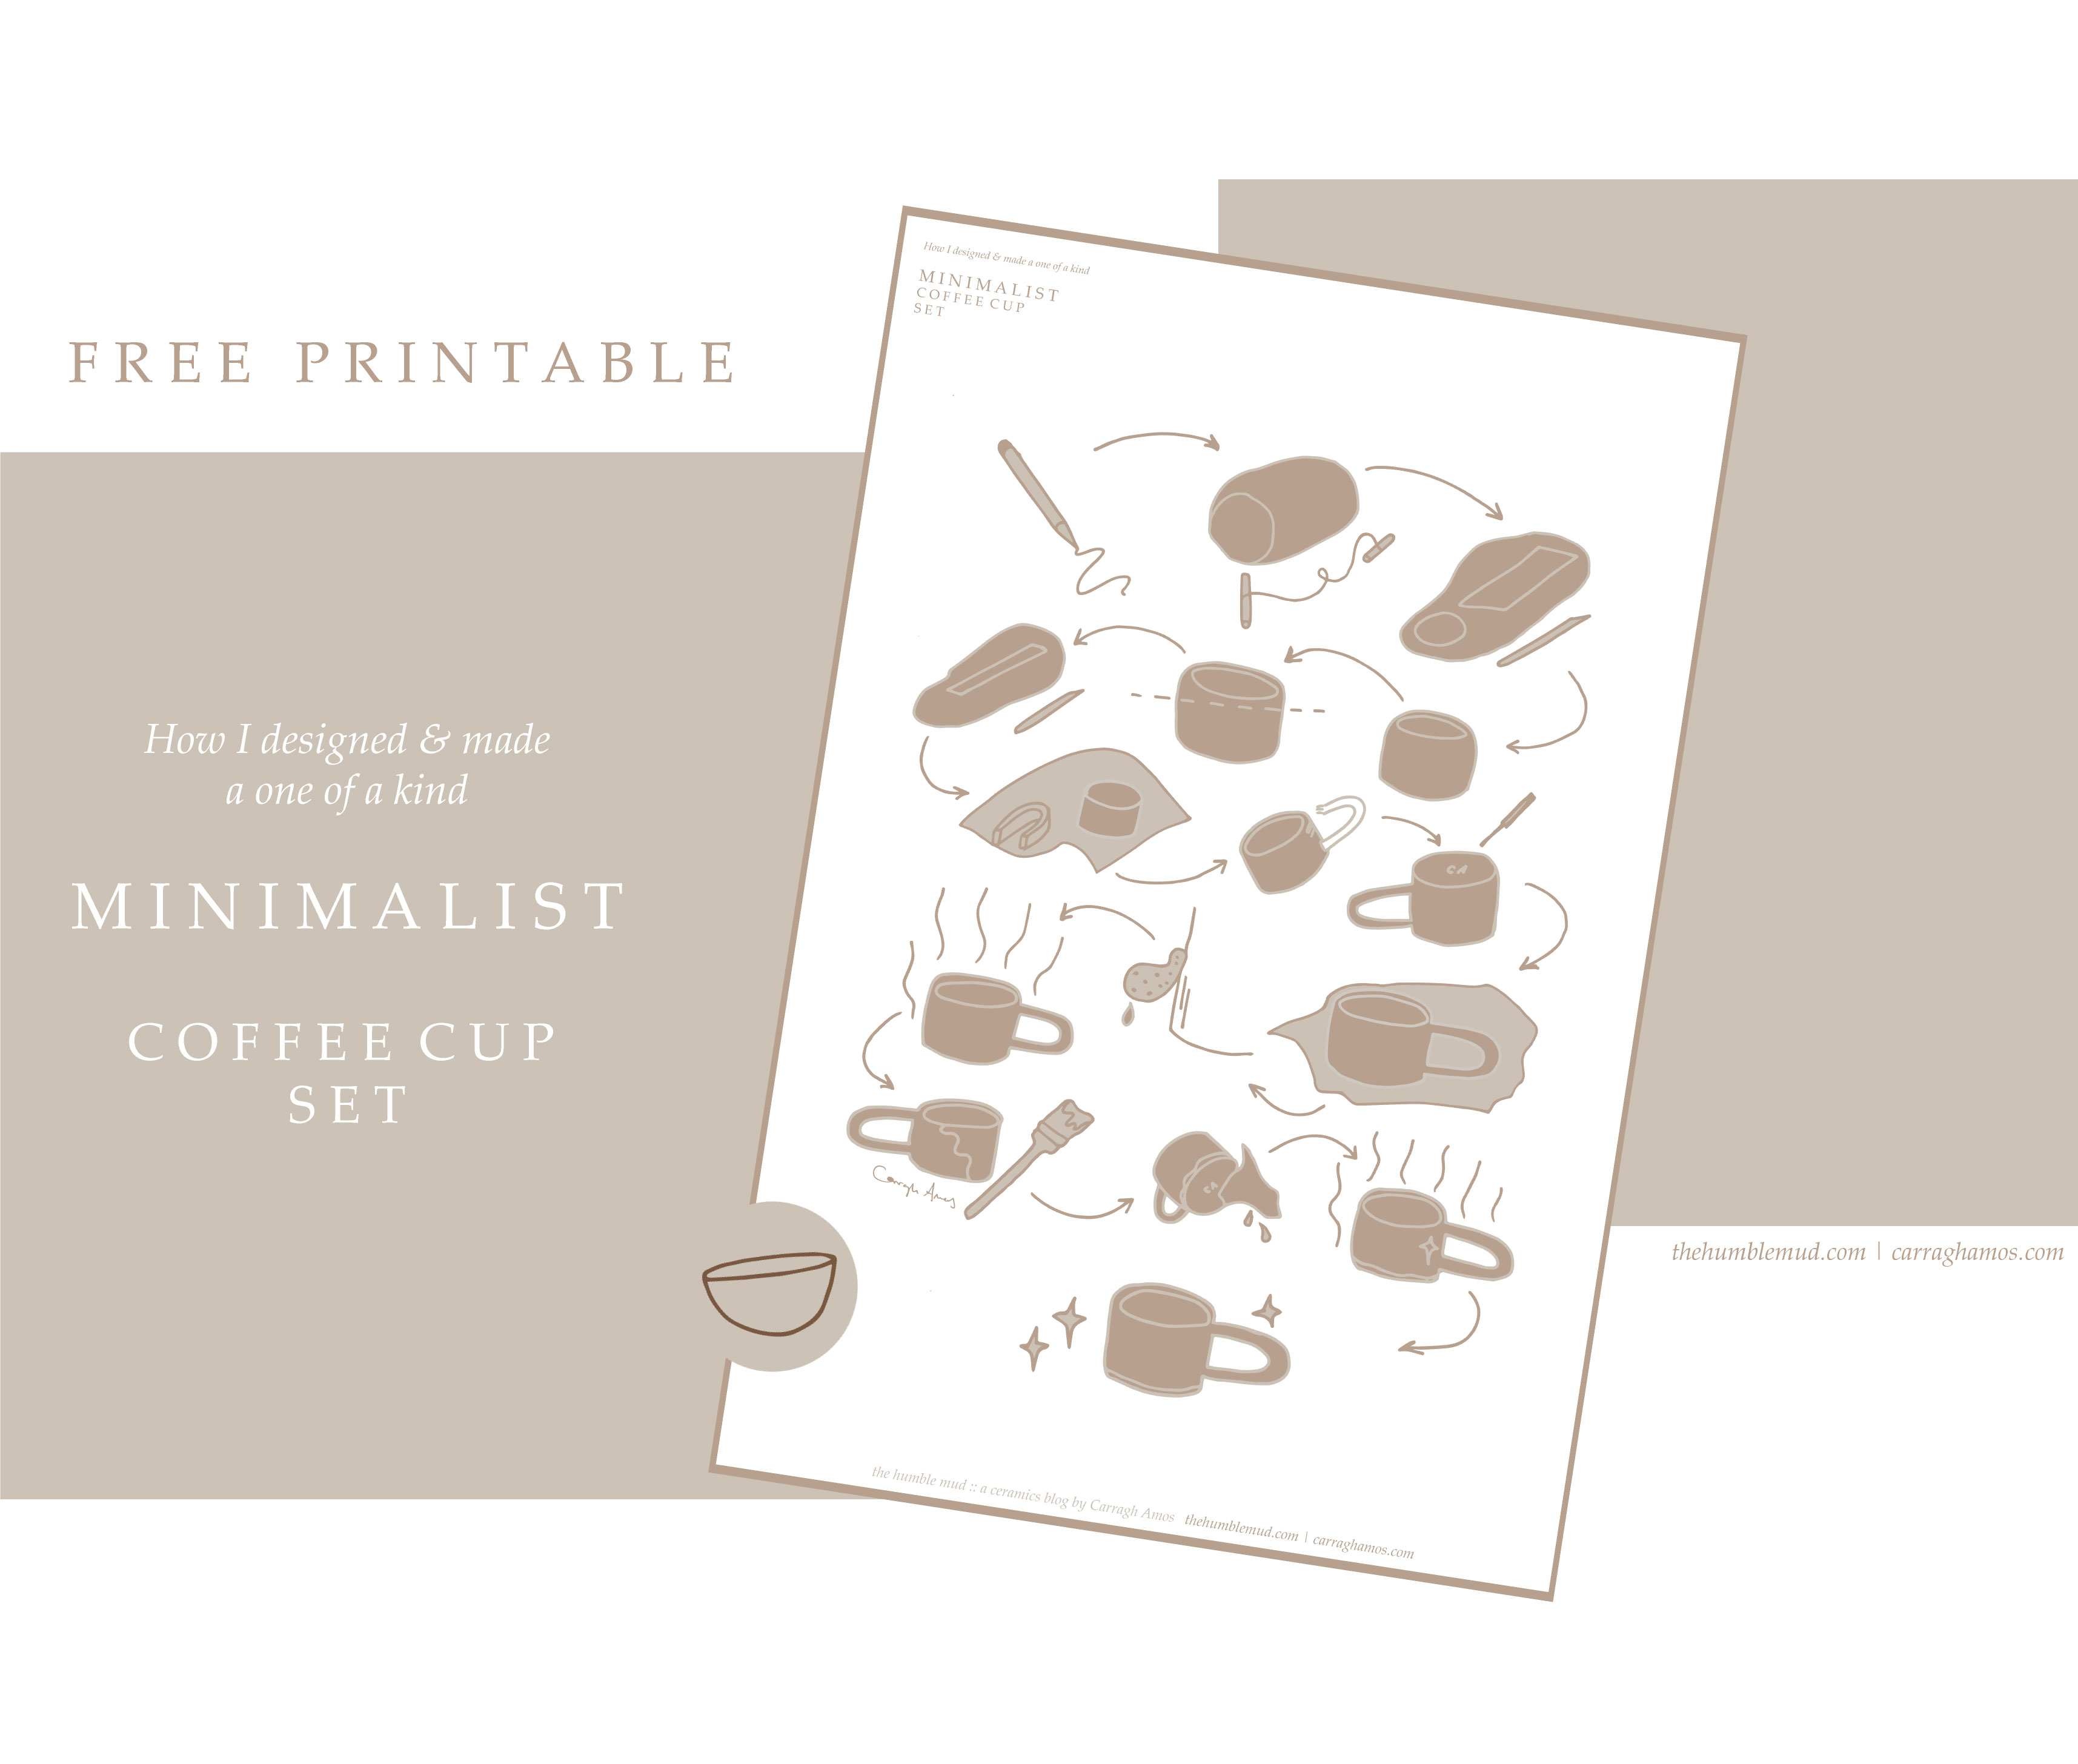 free printable: How to make a handmade slab built mug free printable. Ilustrado minimalista xícara de café instruções.